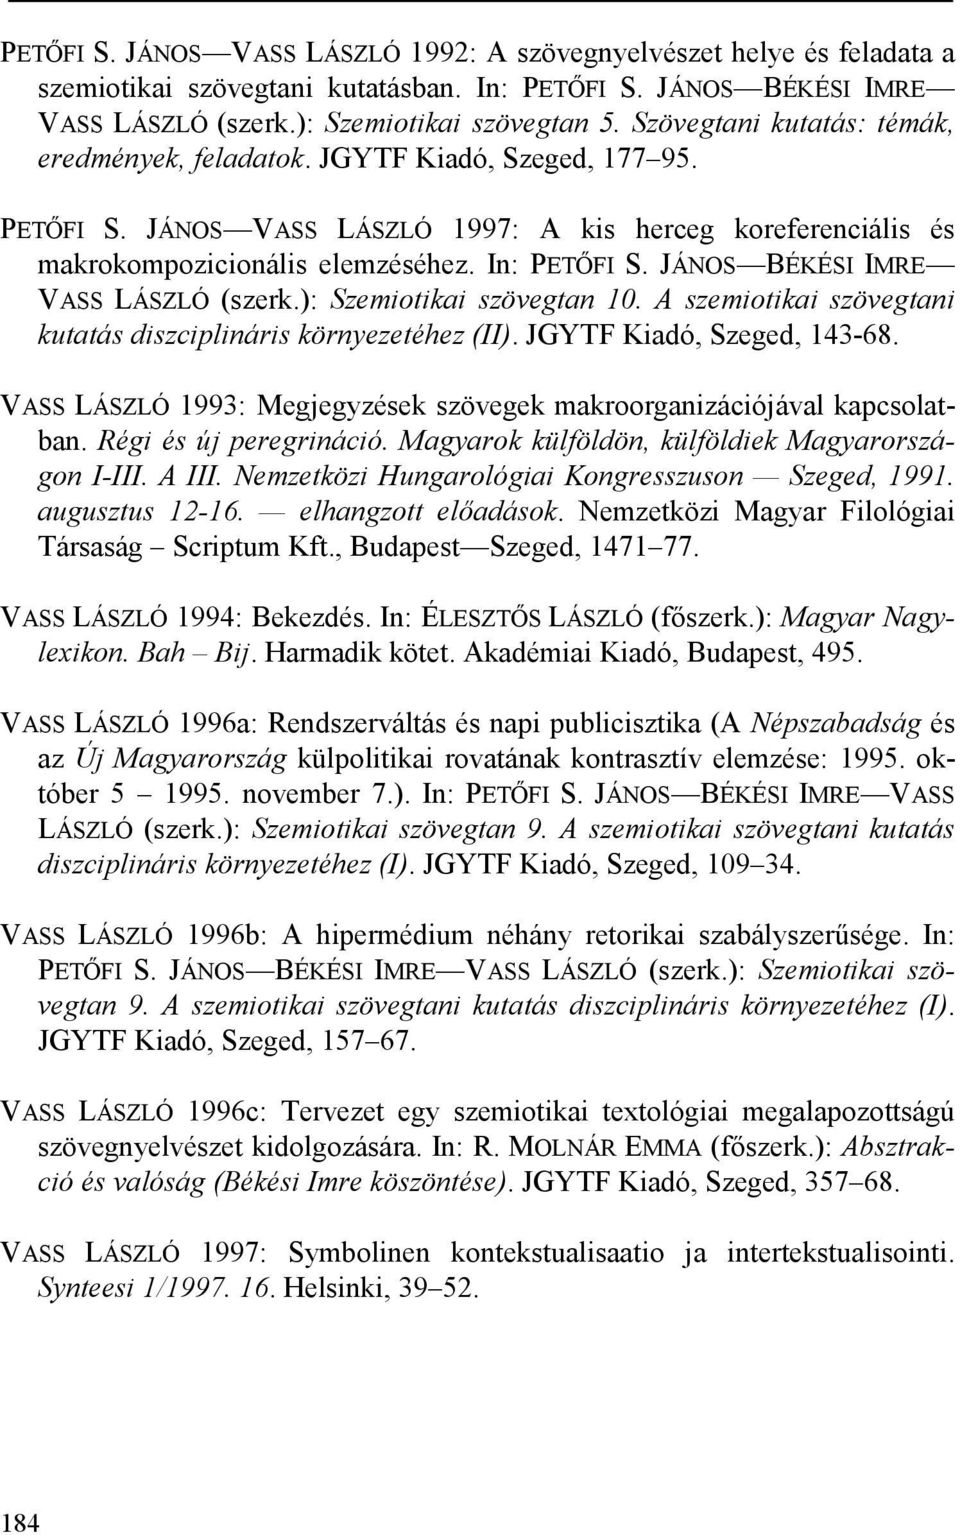 JÁNOS BÉKÉSI IMRE VASS LÁSZLÓ (szerk.): Szemiotikai szövegtan 10. A szemiotikai szövegtani kutatás diszciplináris környezetéhez (II). JGYTF Kiadó, Szeged, 143-68.